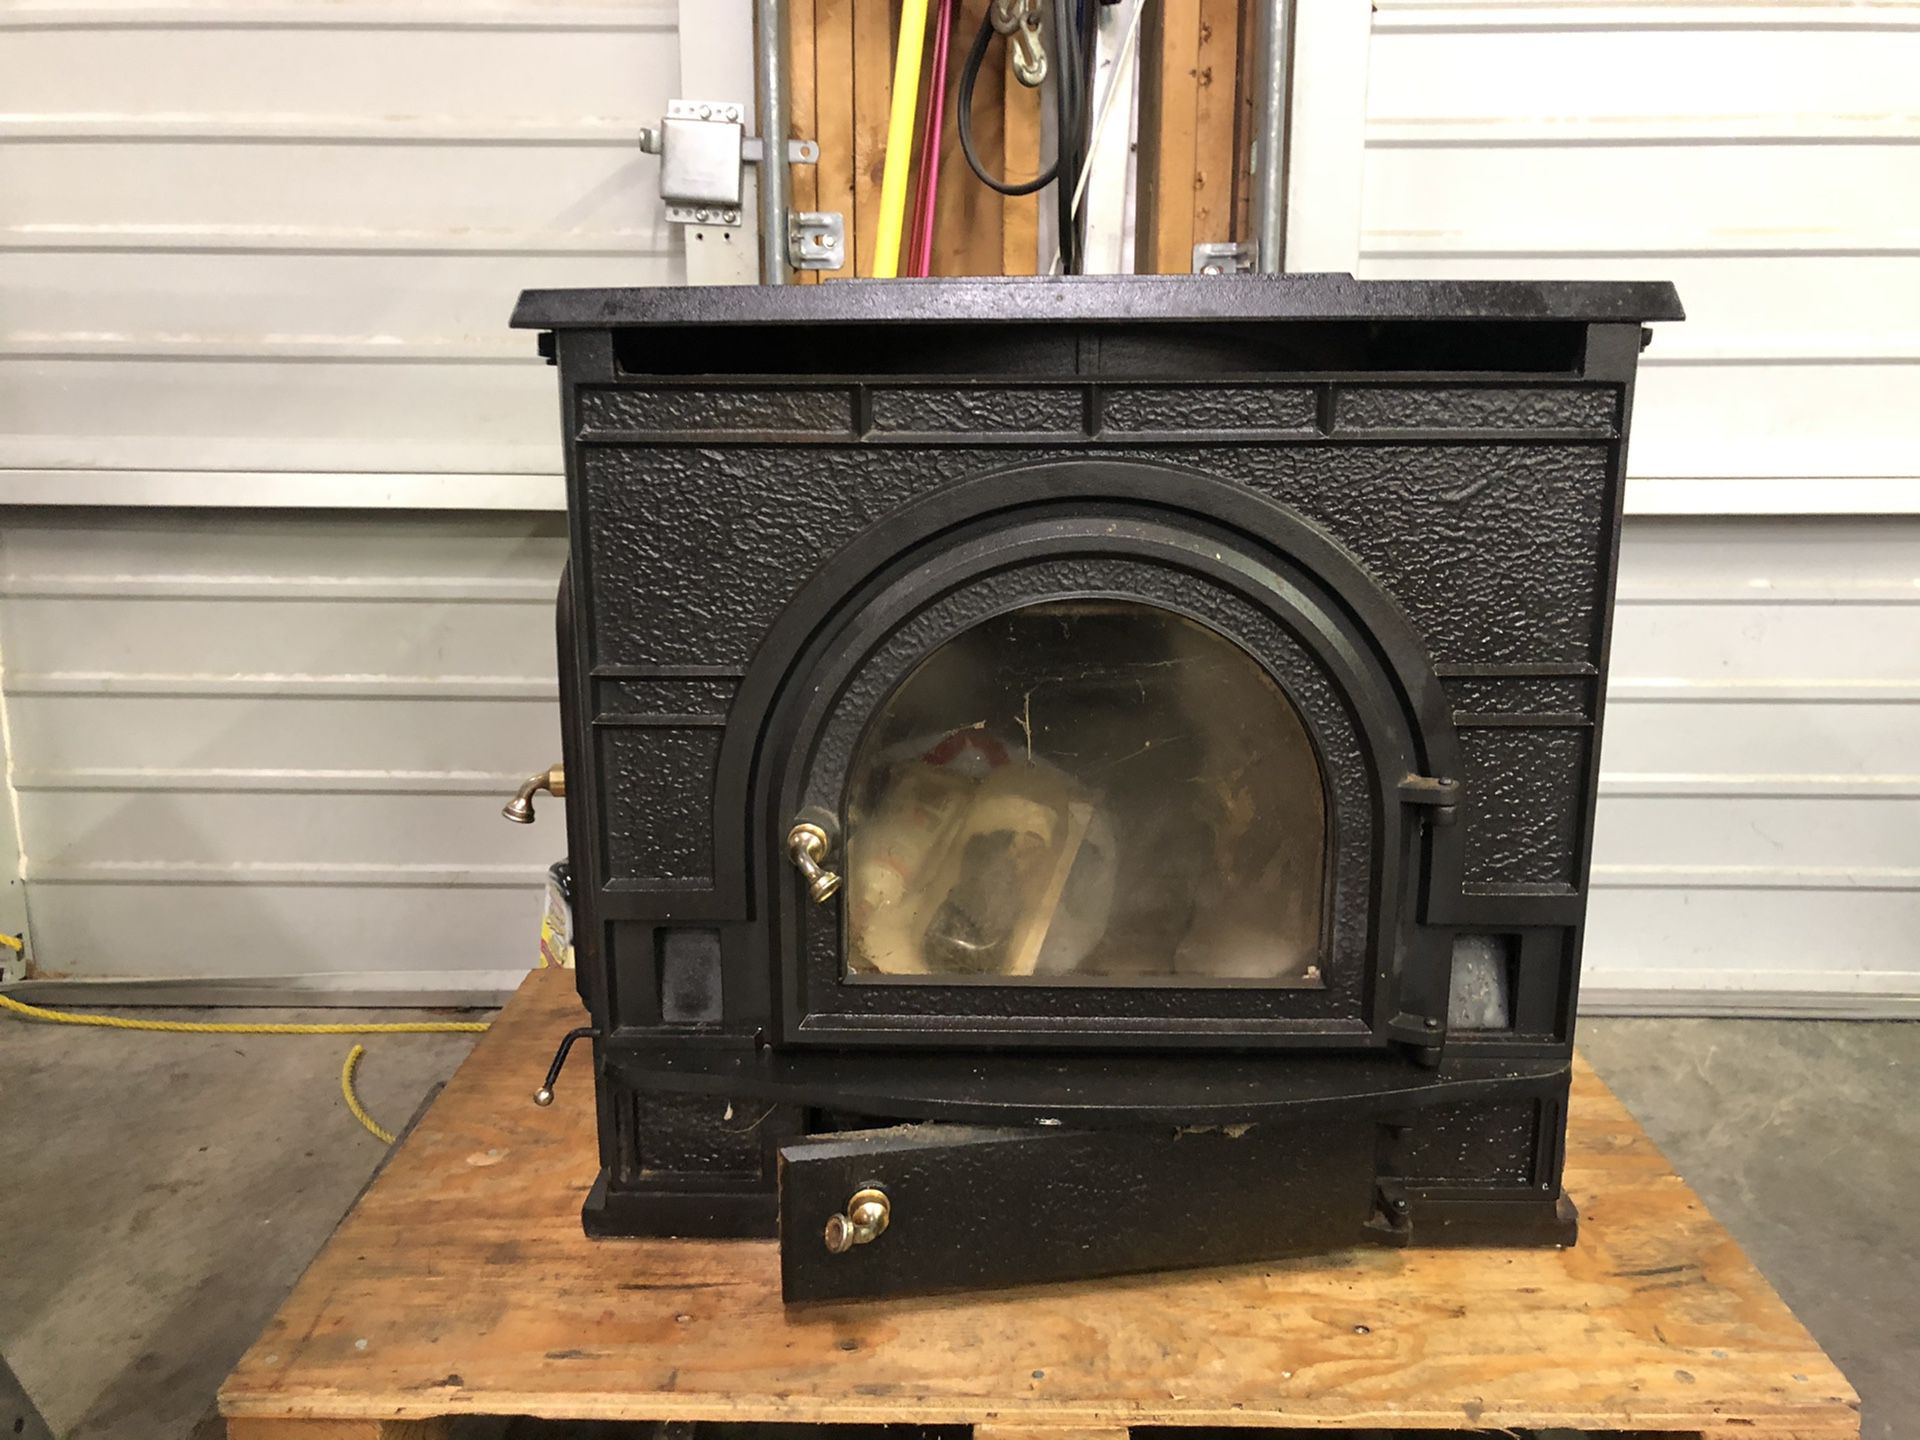 Vermont Castings Dutchwest wood stove